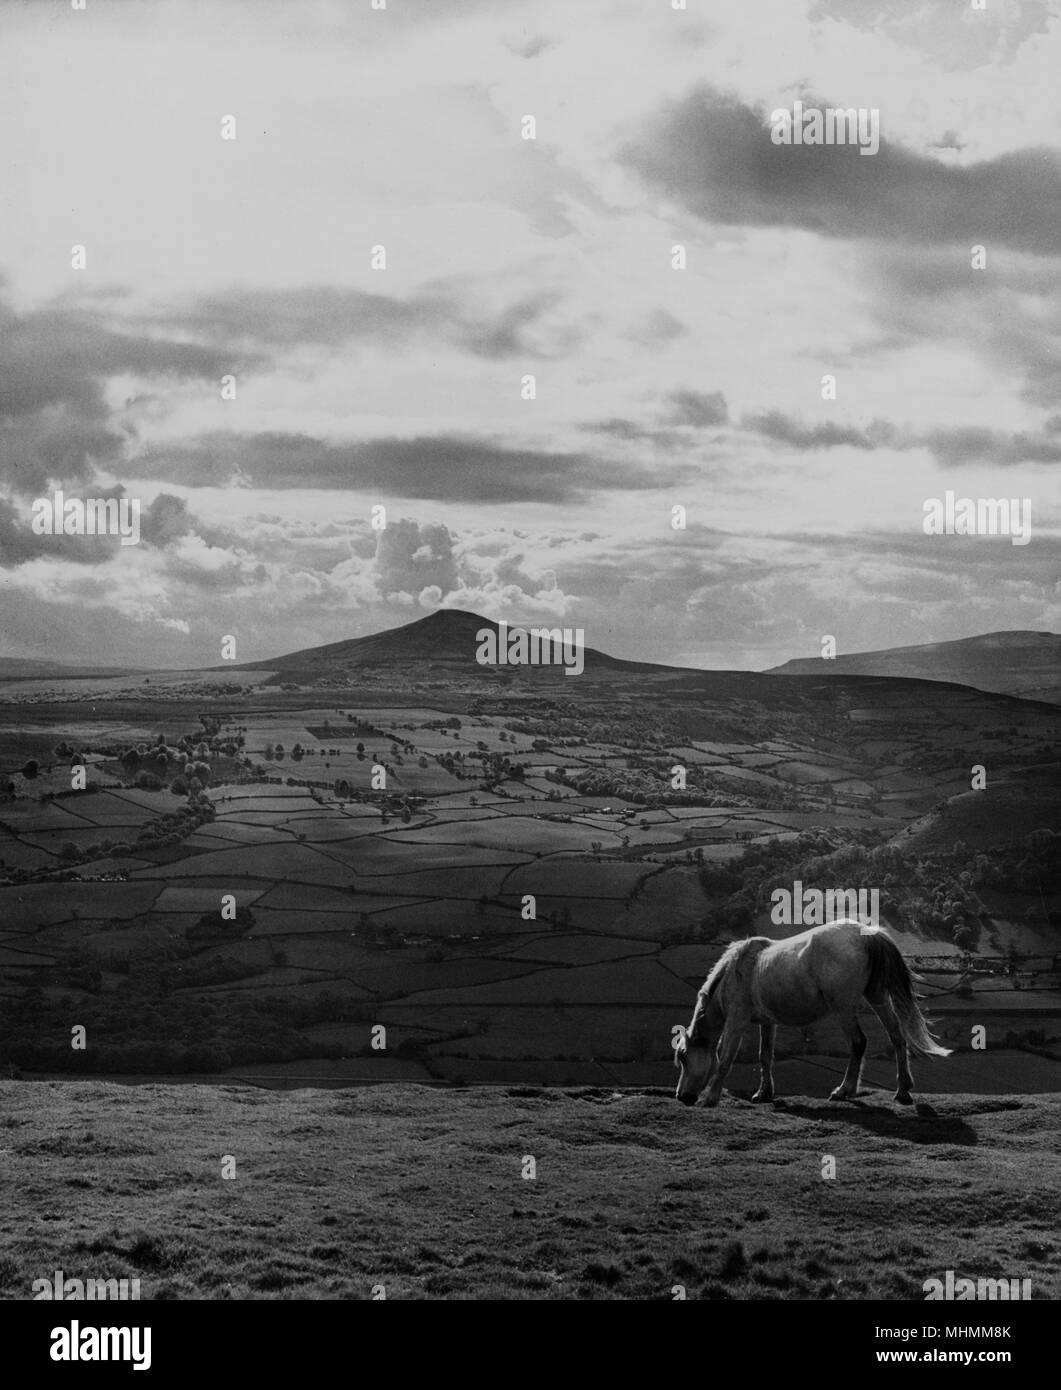 Un cavallo solitario gode della vista verso il Pan di zucchero, visto da Skirrid Fawr, vicino ad Abergavenny, Monmouth, Galles. Foto Stock